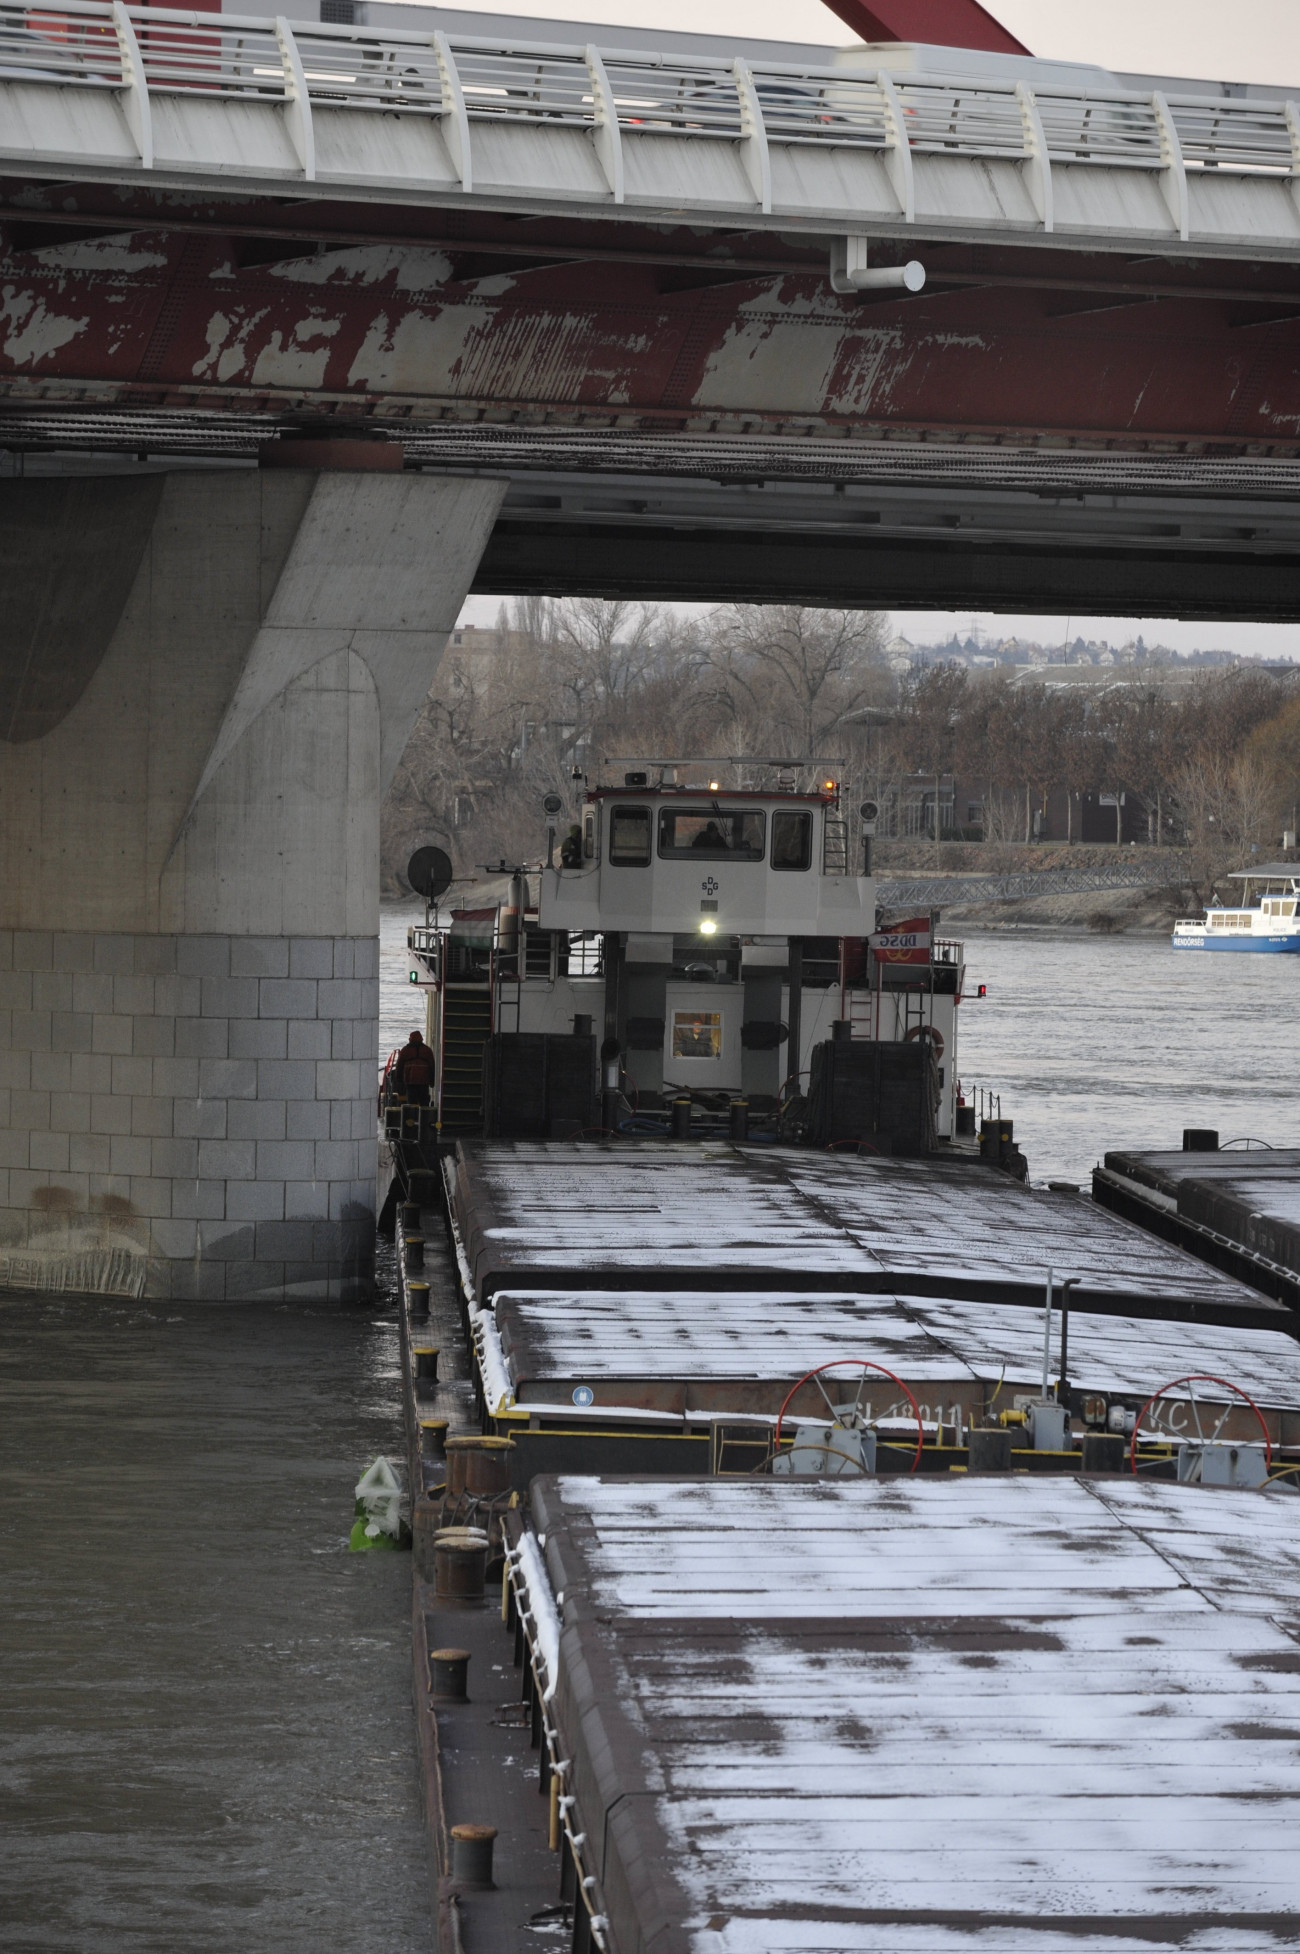 Budapest, 2021. február 12.
A Rákóczi híd pillérének ütközött uszály 2021. február 12-én. A hajó nem sérült meg komolyabban és a hídpillérben sem okozott nagyobb kárt. Az uszály rakománya között nem volt veszélyes anyag. Az uszály jelenleg is a hídnál vesztegel, a társhatóságok dolgoznak a fennakadás megszüntetésén.
MTI/Mihádák Zoltán